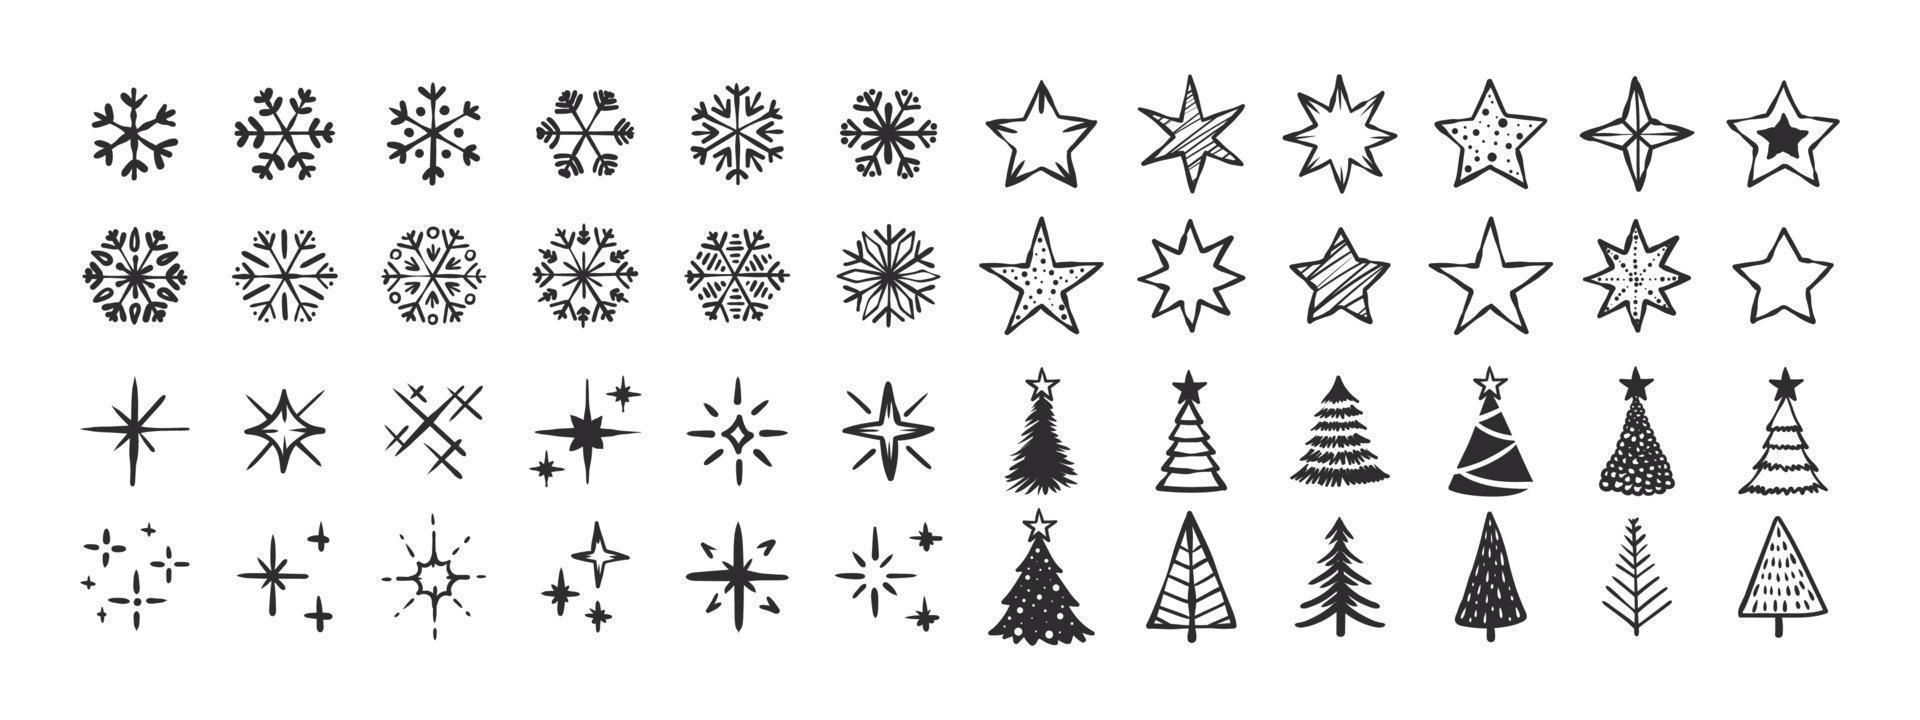 íconos del árbol de copos de nieve y las estrellas. iconos simples de navidad. signos de navidad. iconos vectoriales vector